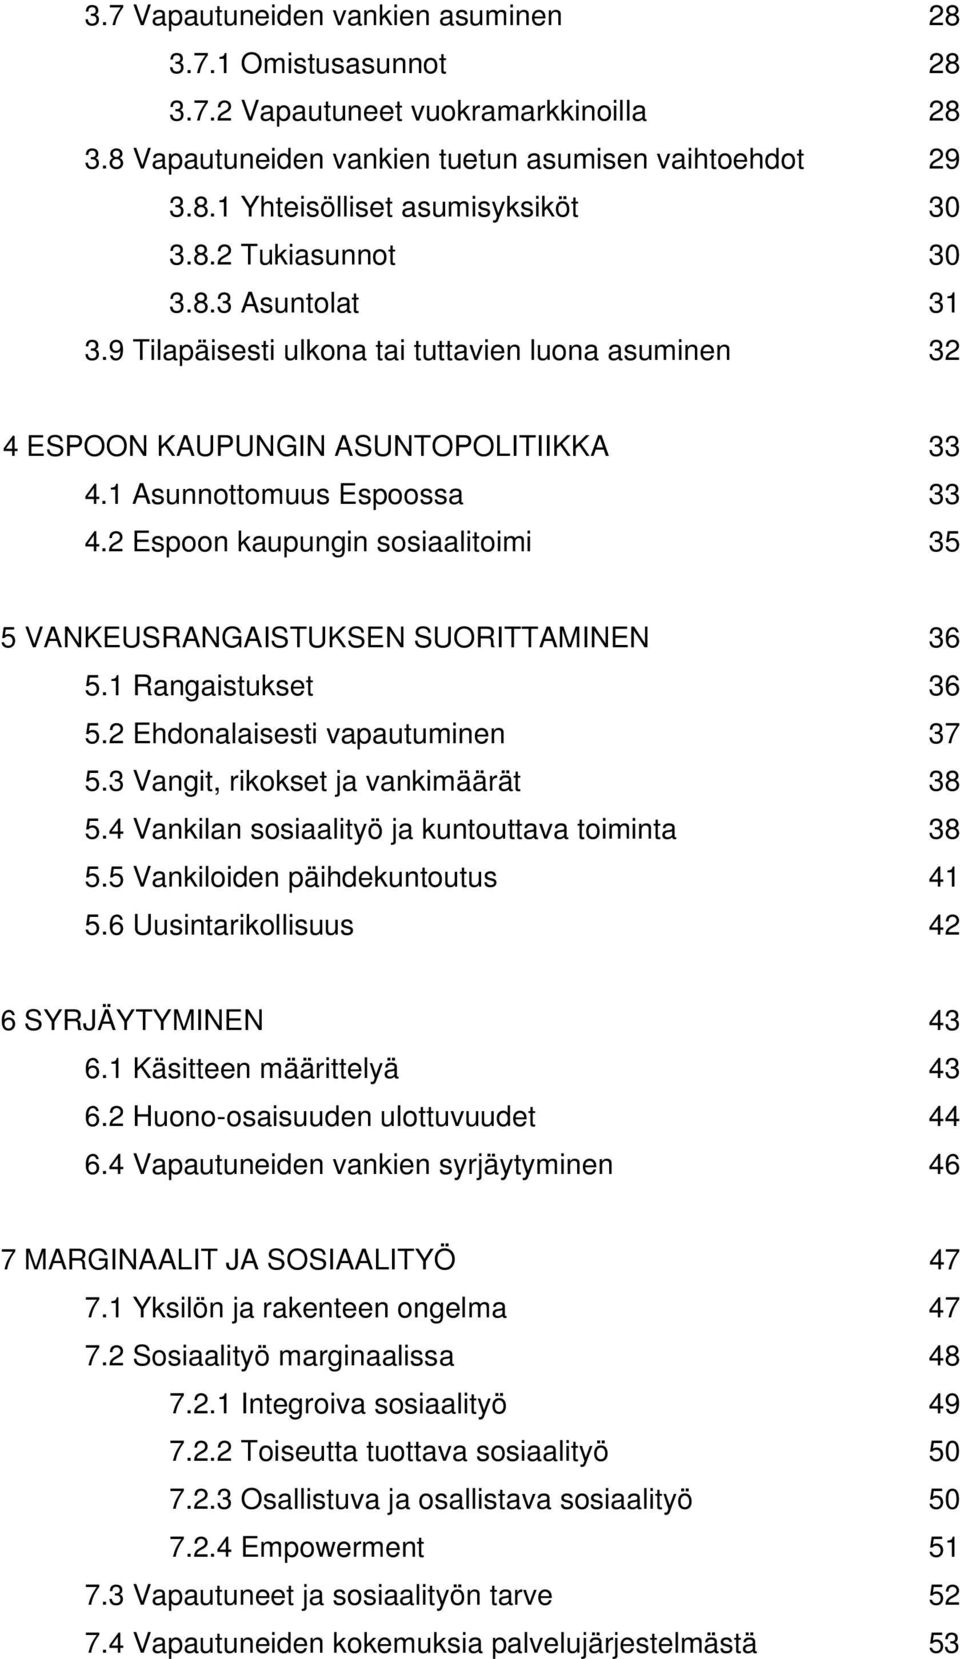 2 Espoon kaupungin sosiaalitoimi 35 5 VANKEUSRANGAISTUKSEN SUORITTAMINEN 36 5.1 Rangaistukset 36 5.2 Ehdonalaisesti vapautuminen 37 5.3 Vangit, rikokset ja vankimäärät 38 5.